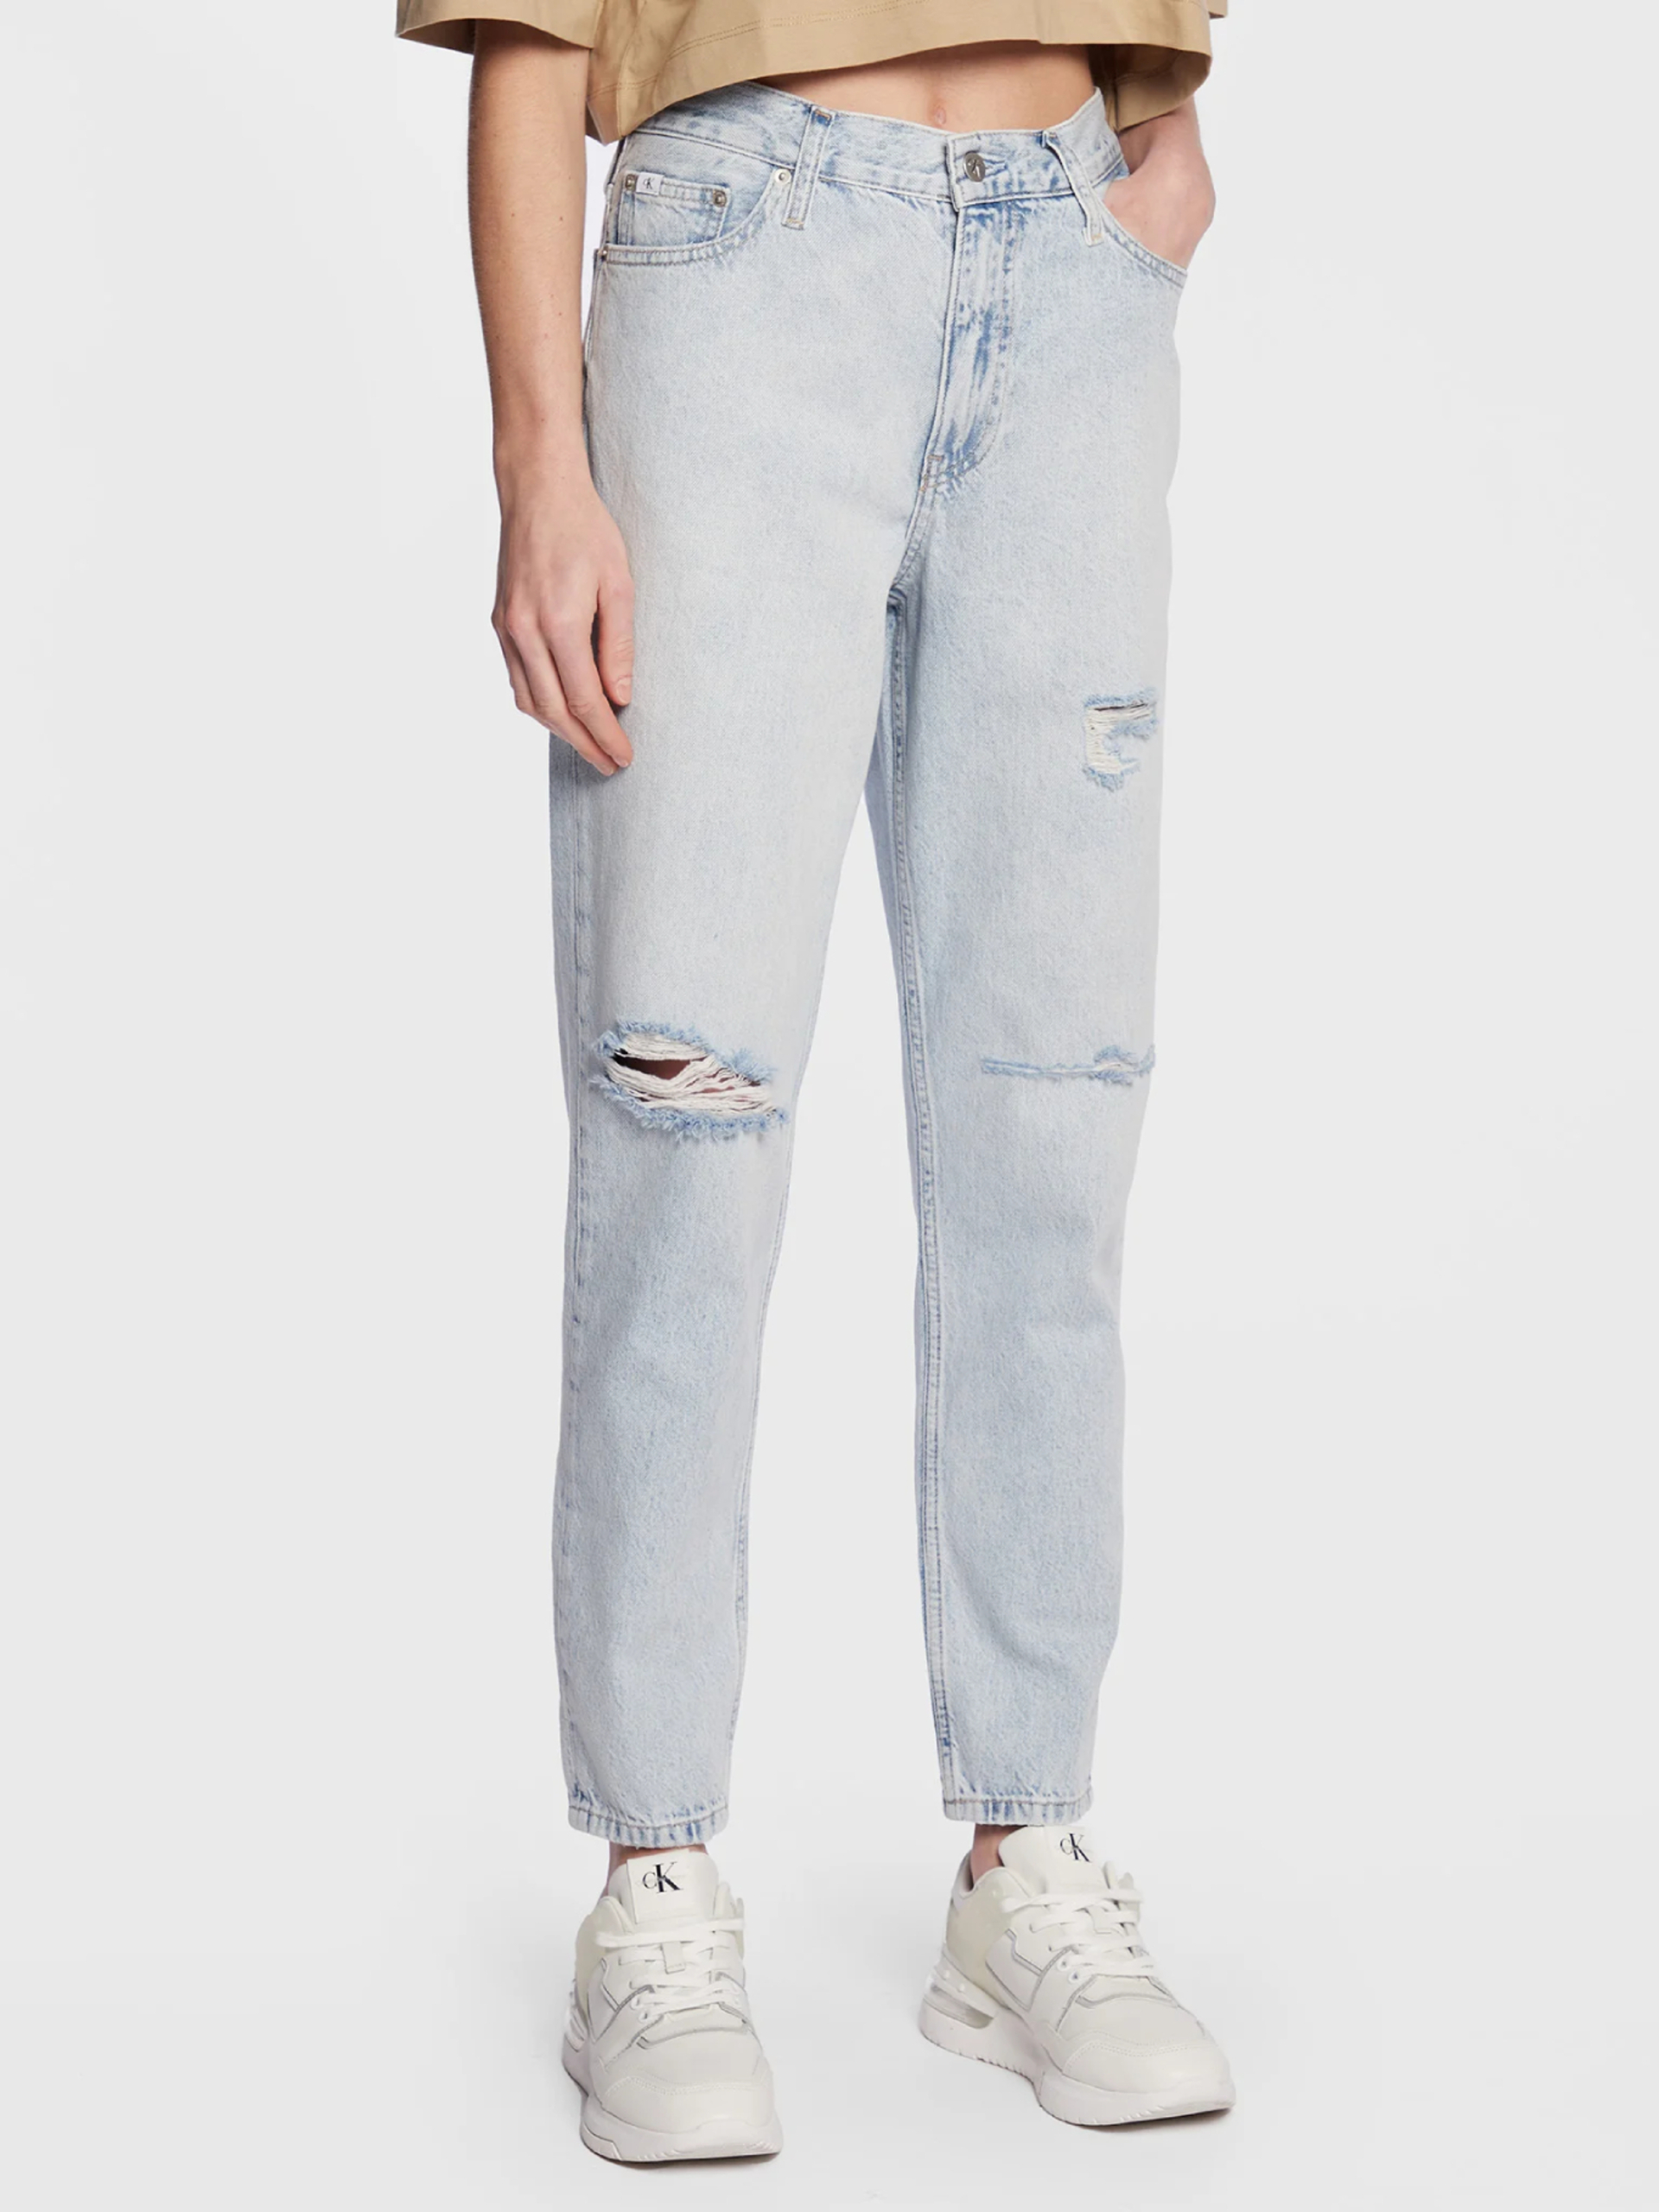 Calvin Klein dámské modré džíny - 25/NI (1AA)